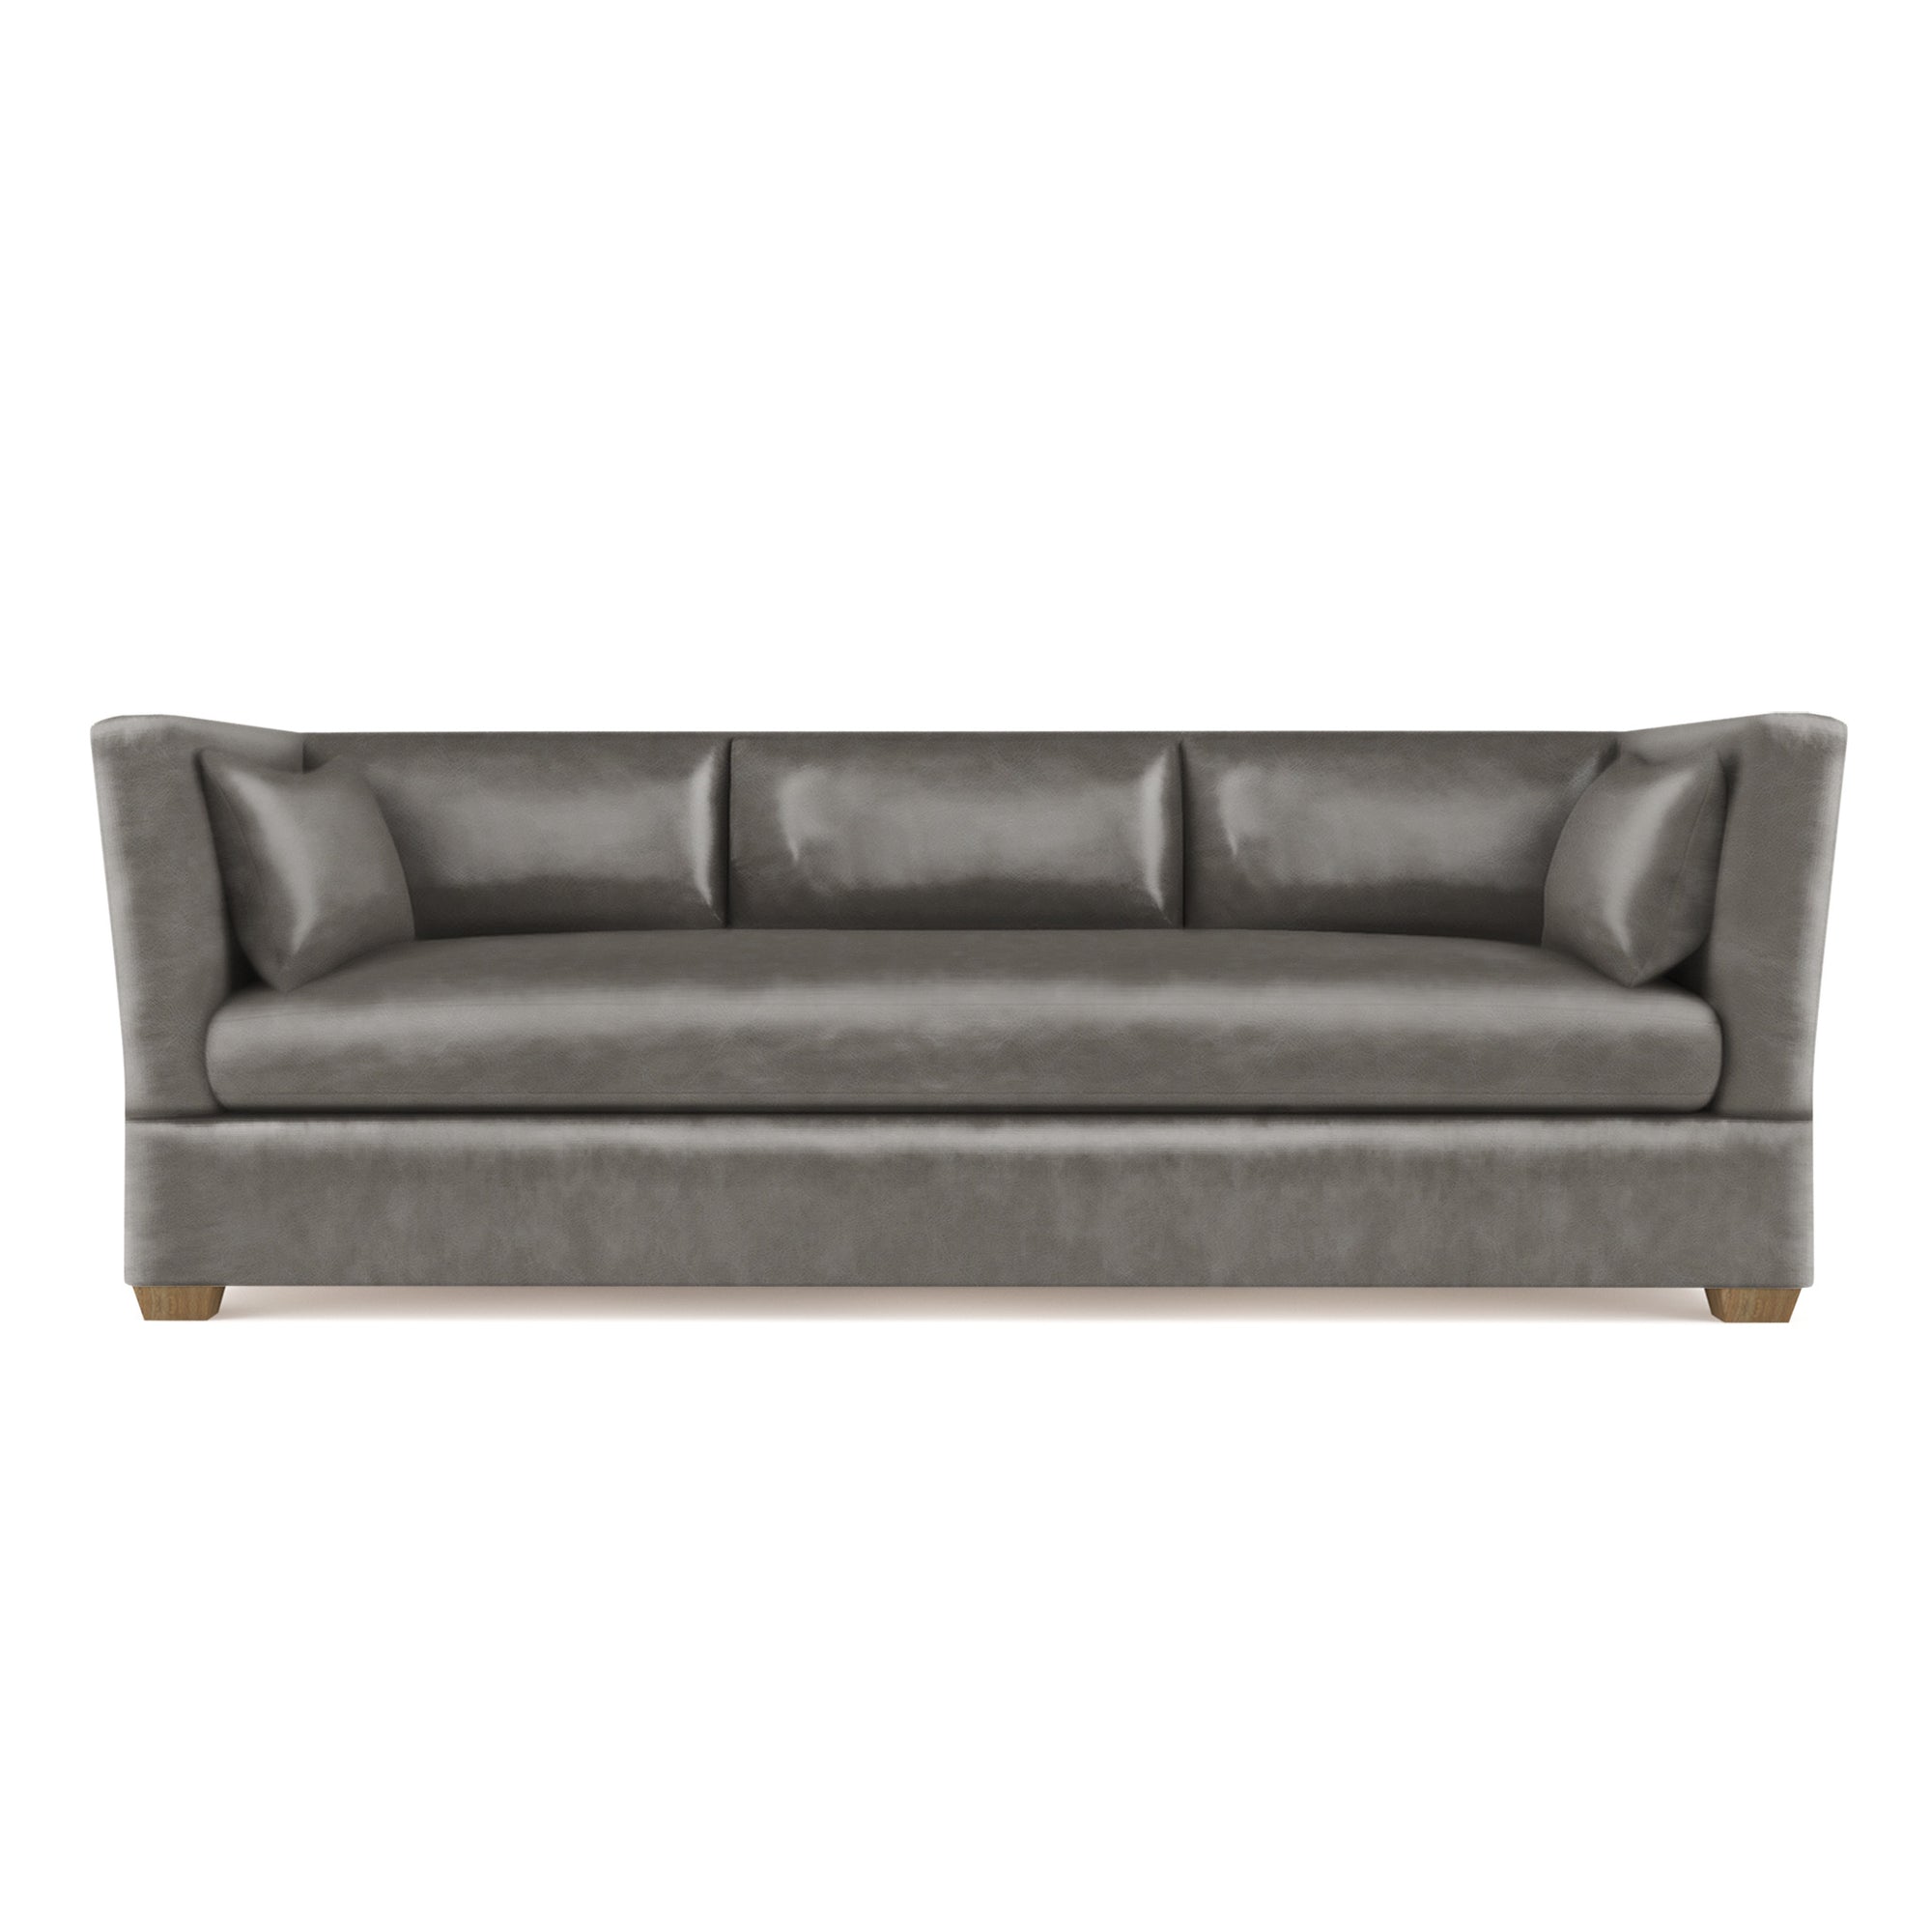 Rivington Sofa - Pumice Vintage Leather